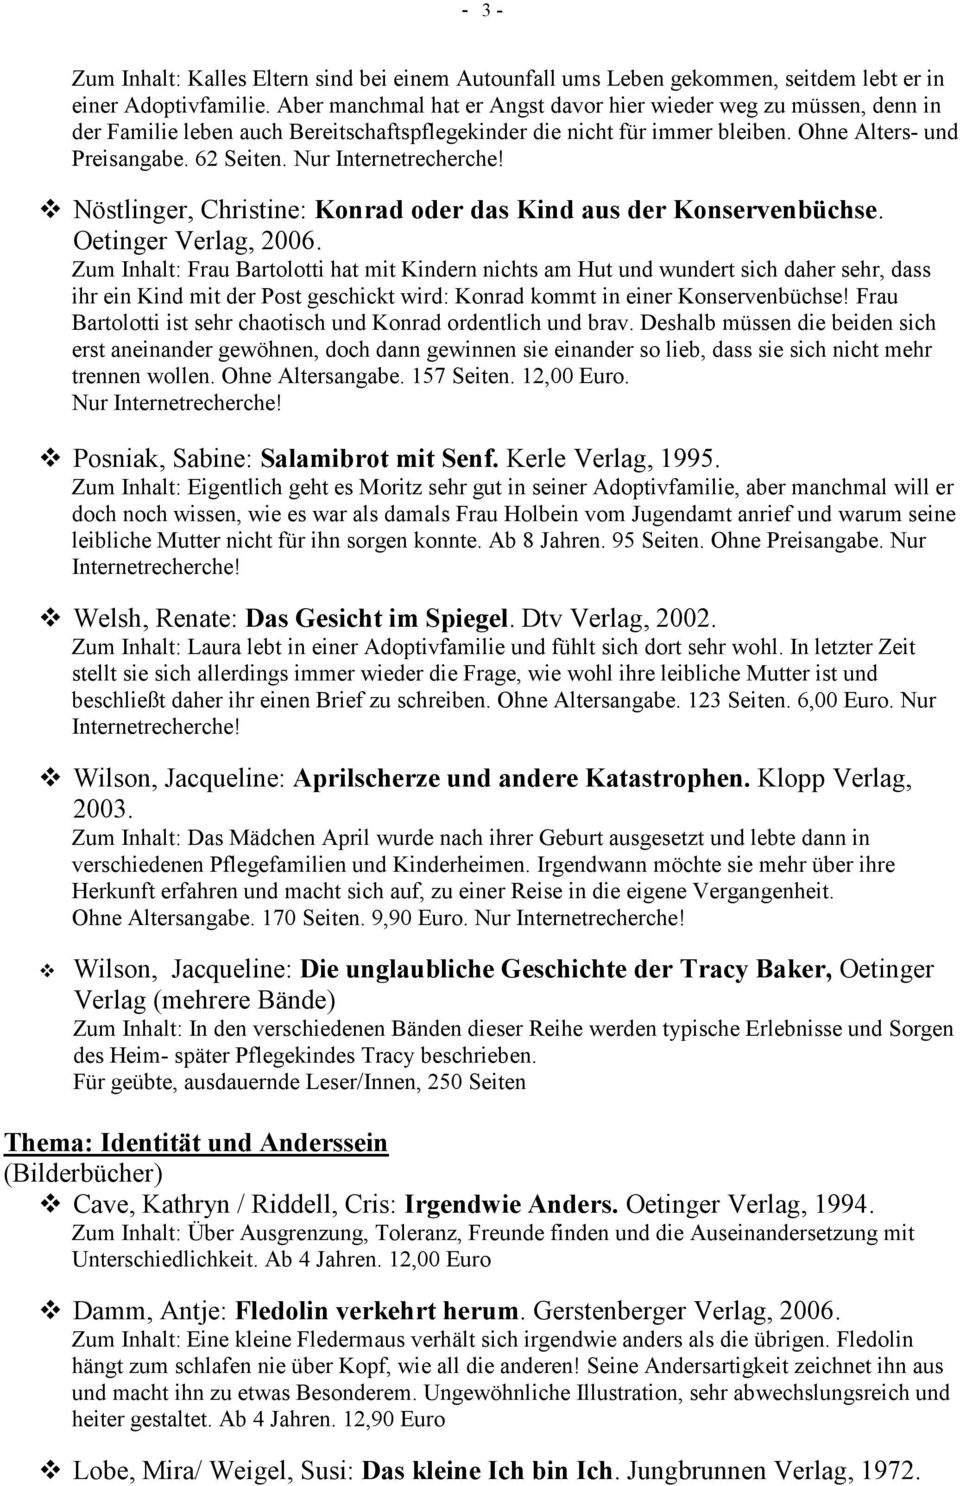 Nur Nöstlinger, Christine: Konrad oder das Kind aus der Konservenbüchse. Oetinger Verlag, 2006.